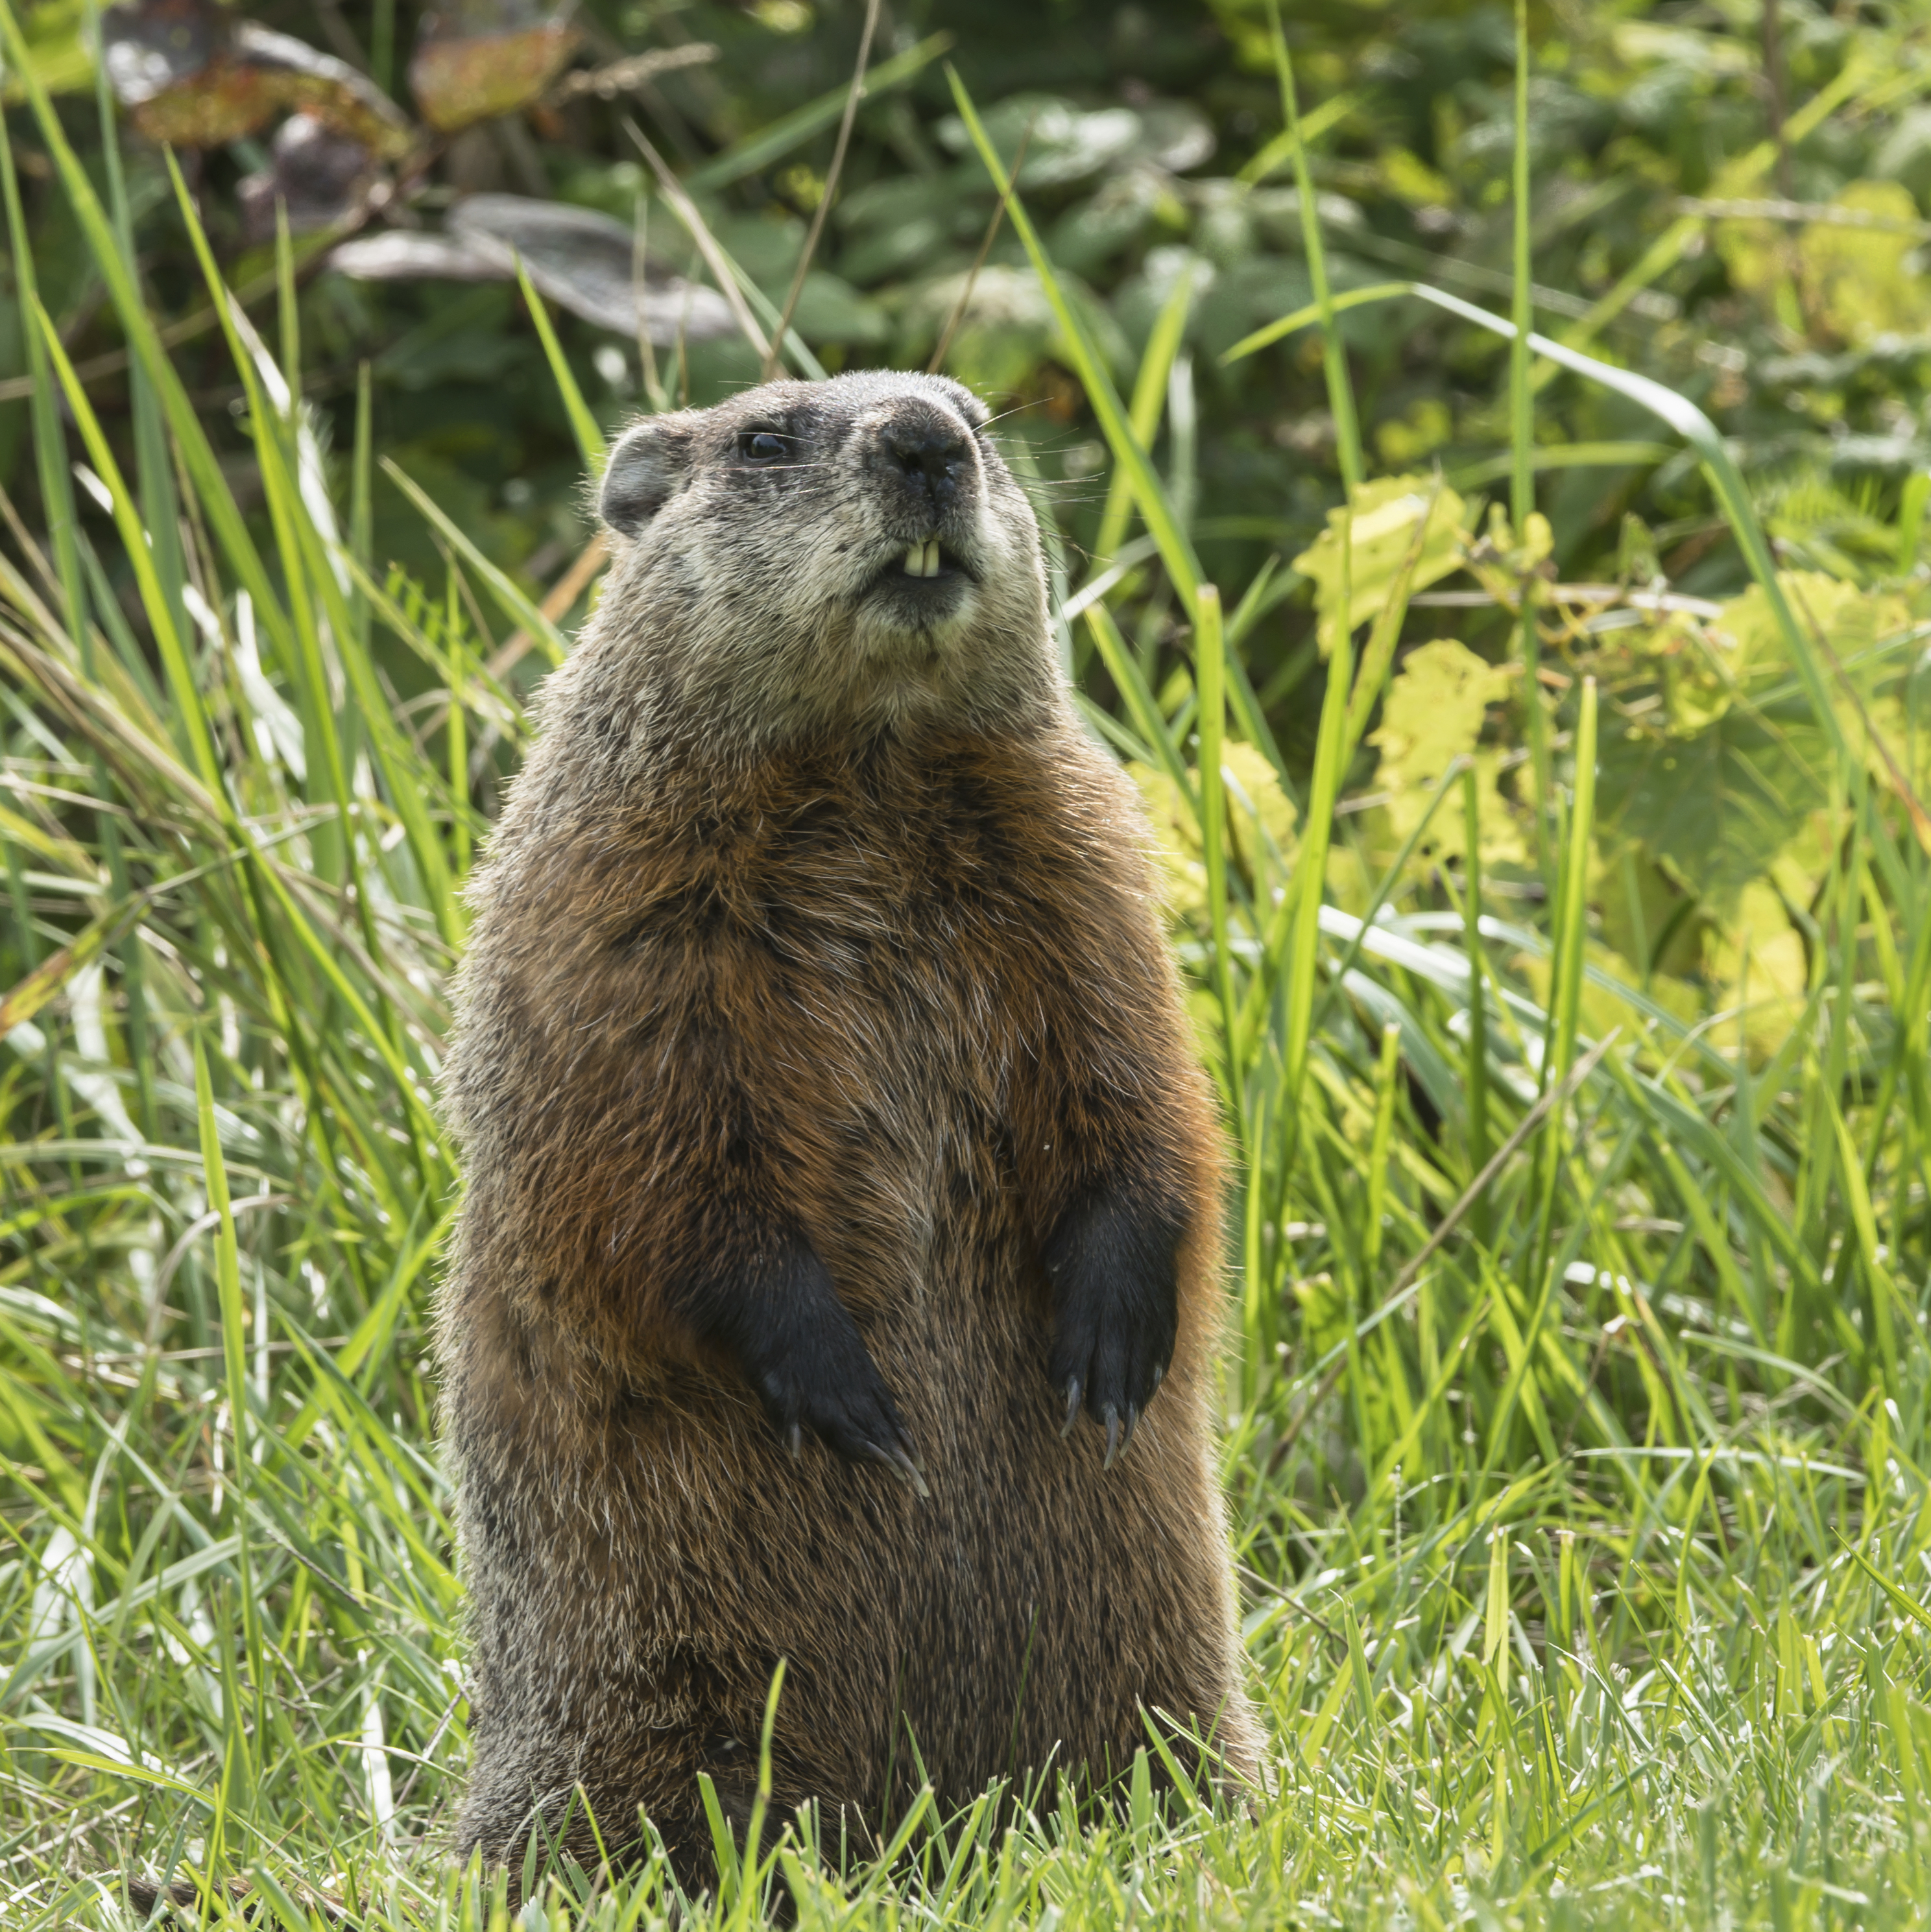 Groundhogs in Georgia